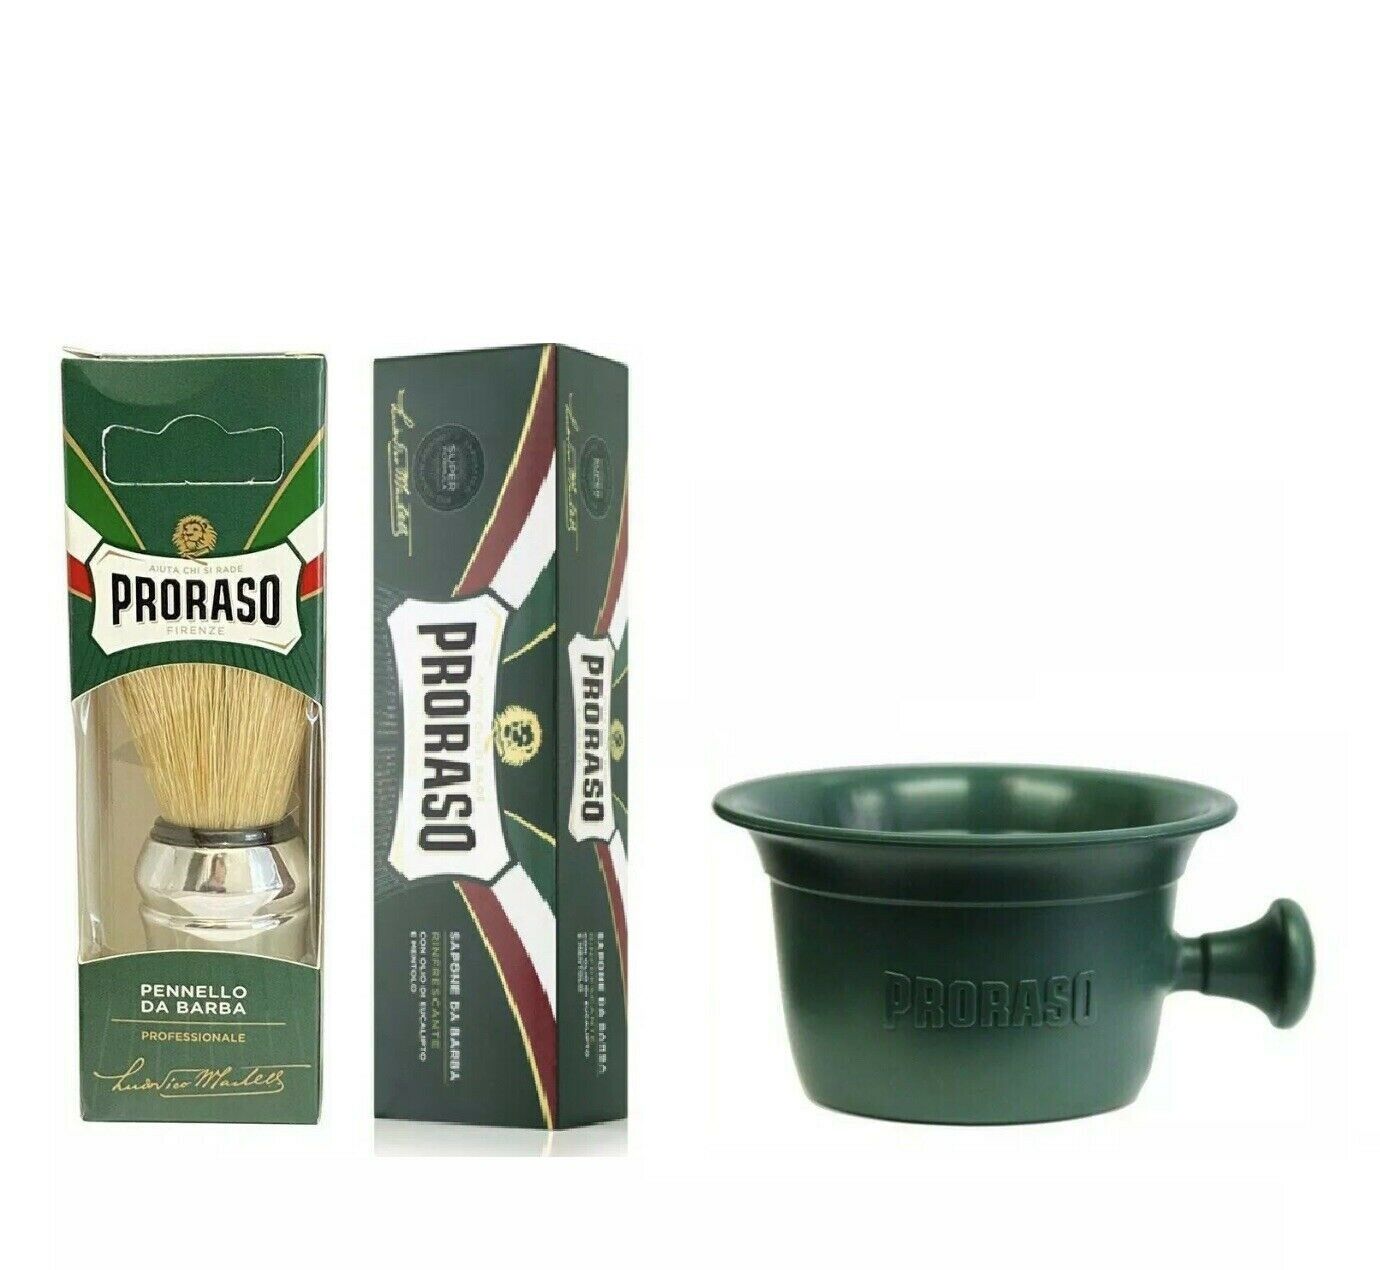 Proraso Green Shaving Cream 150ml Tube+shaving Bowl+large Chrome Brush Set 3 Pcs